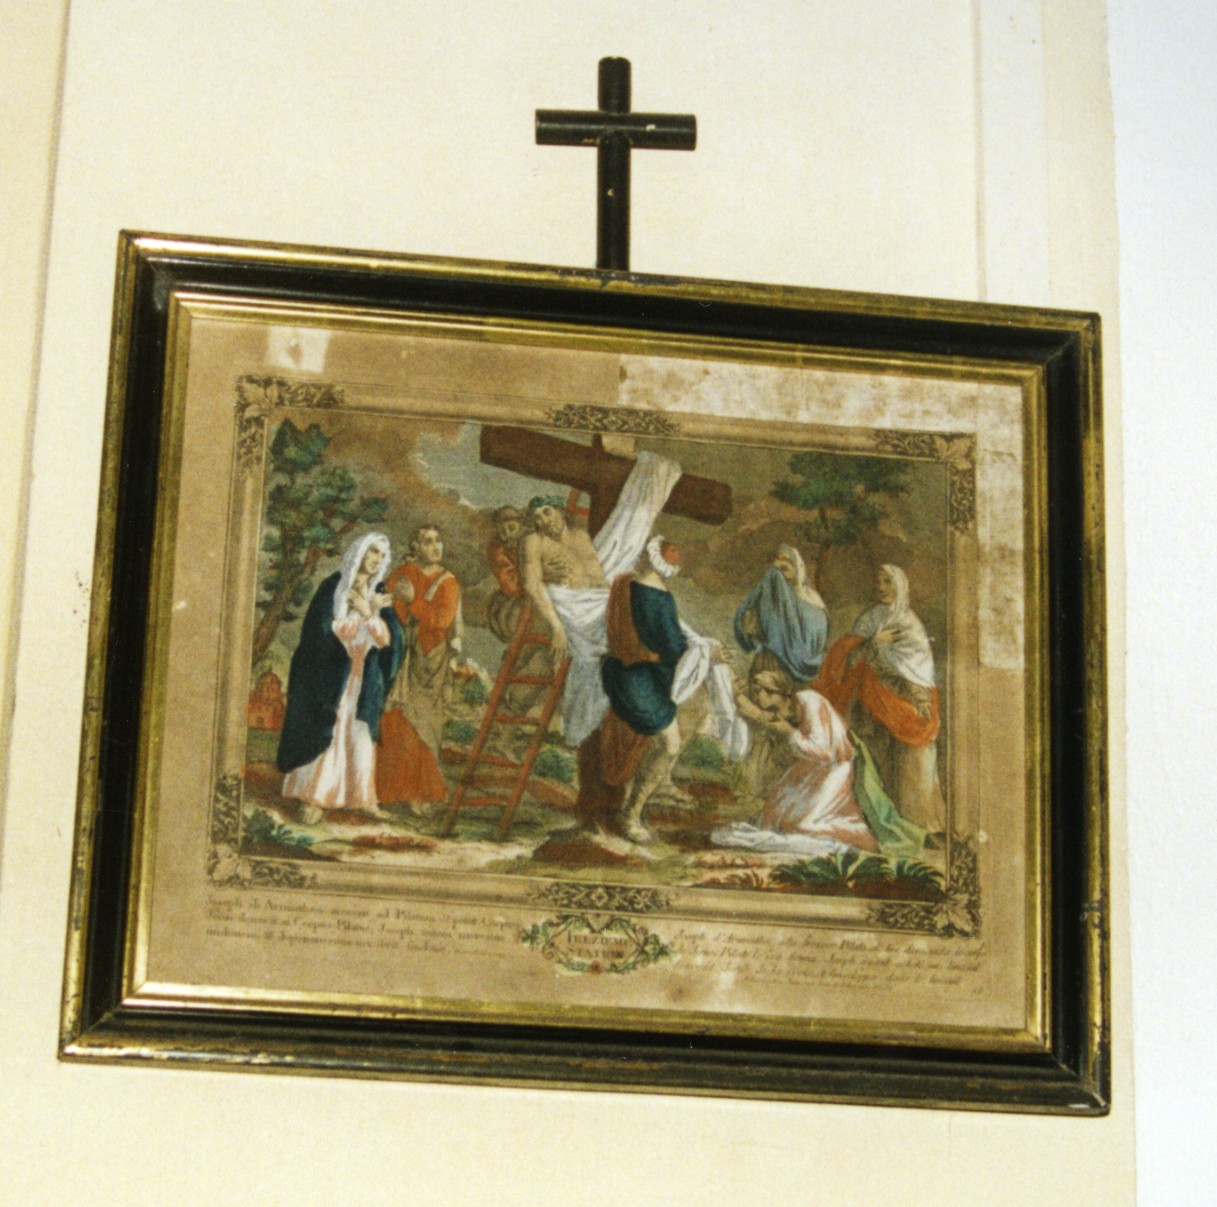 Stazione xiii: gesù deposto dalla croce (via crucis)